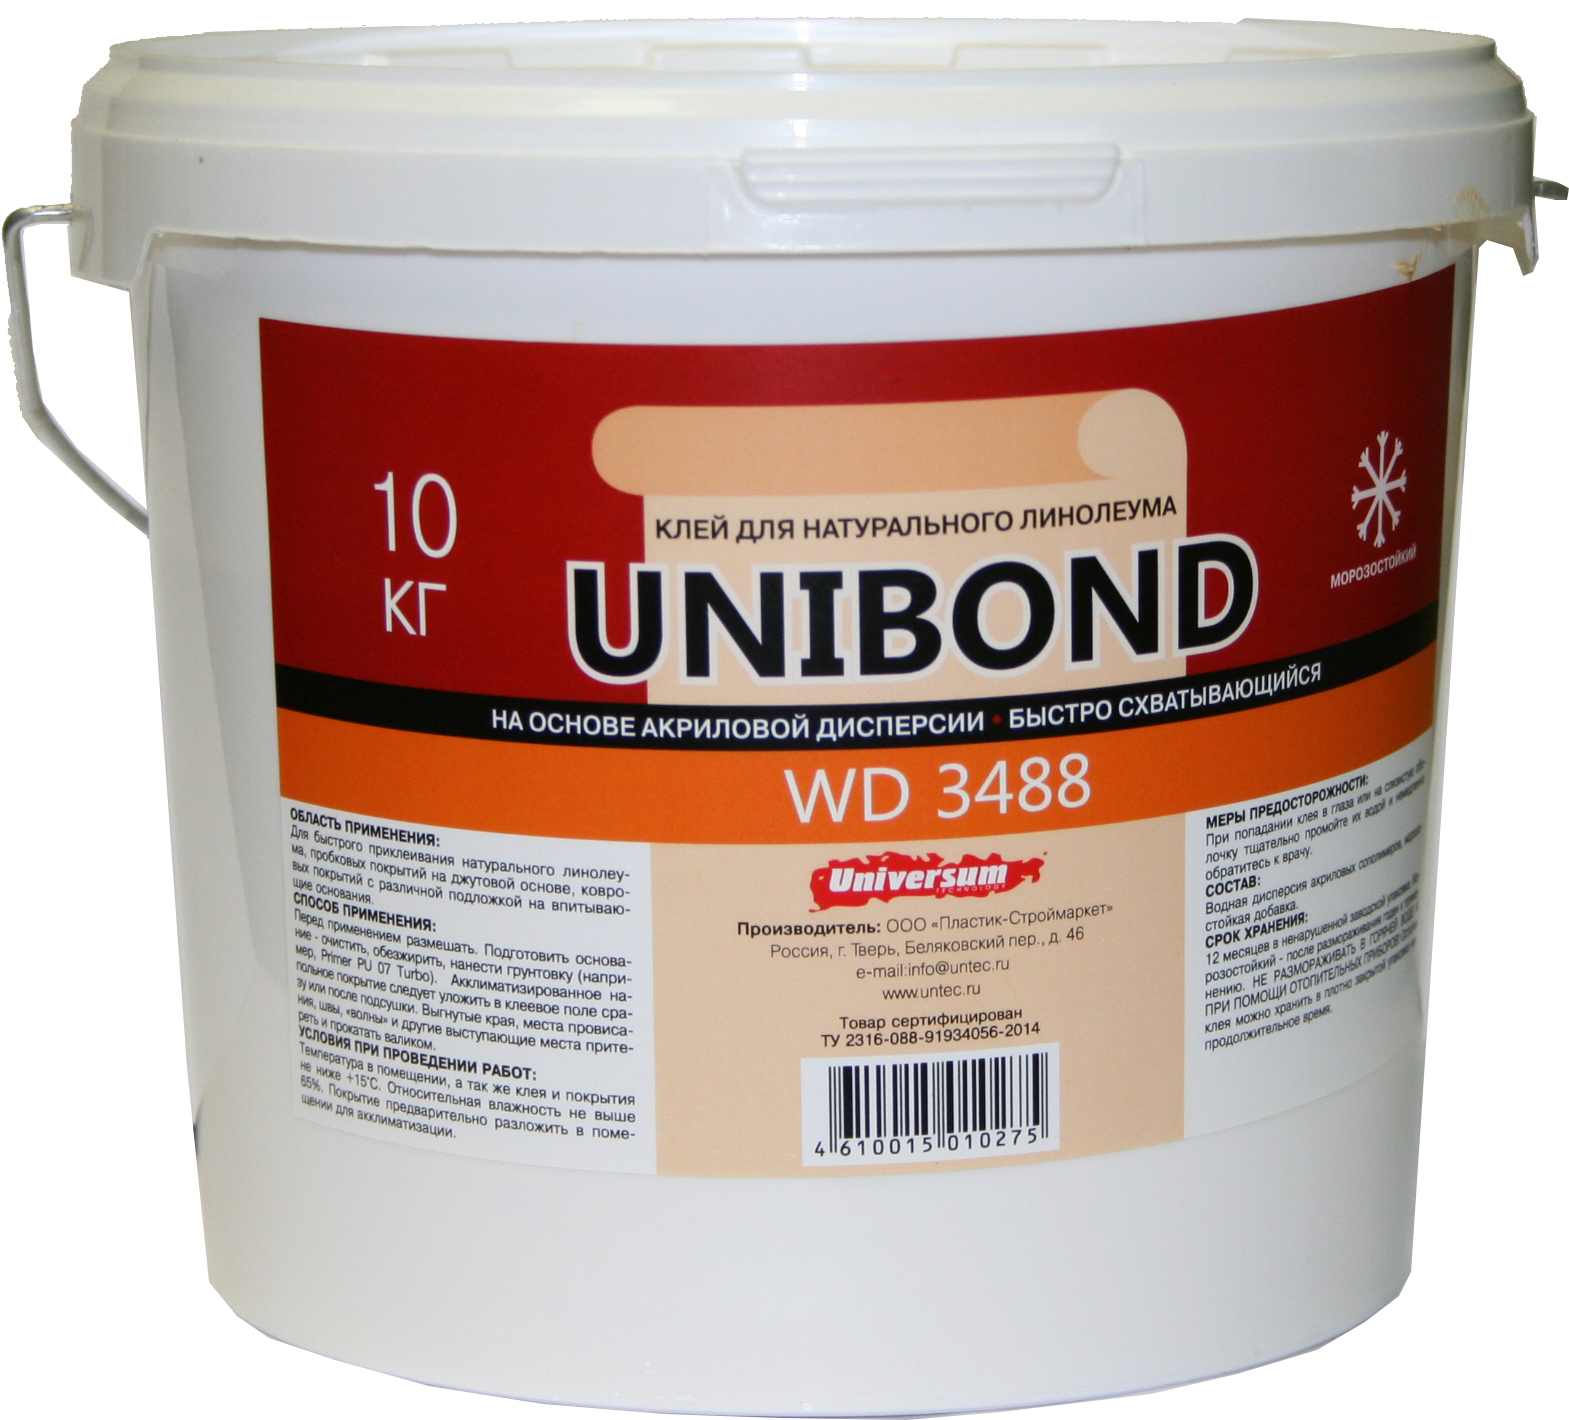 UNIBOND WD 3488 Специальный клей  для натурального линолеума